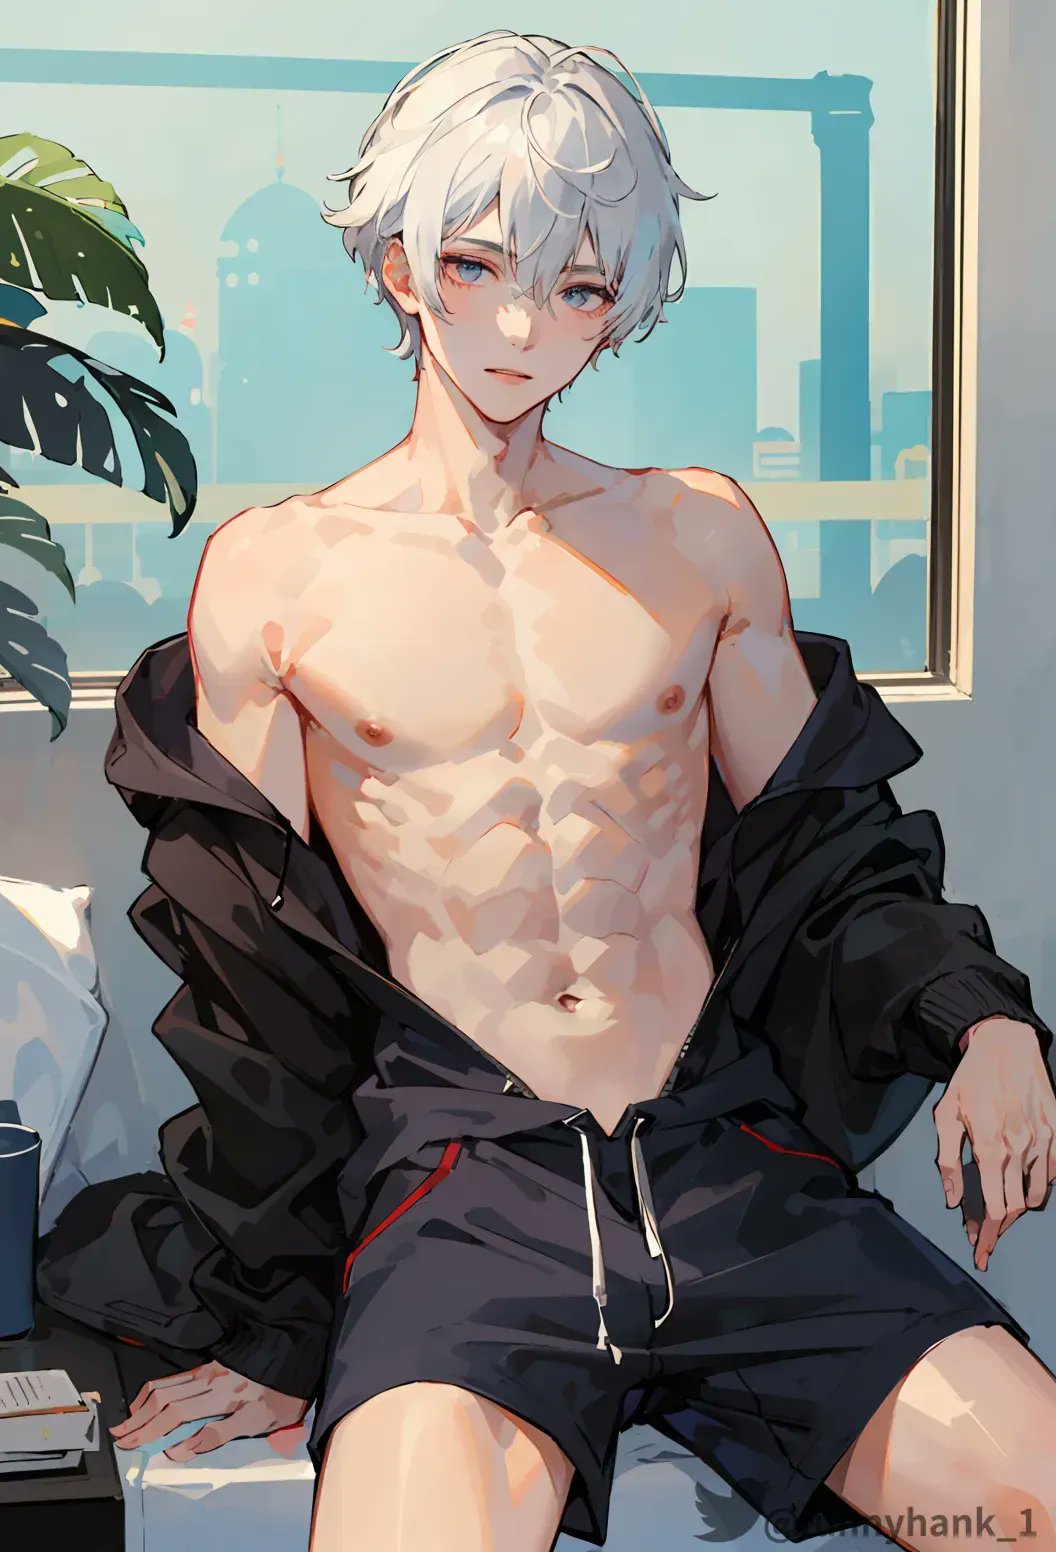 Muscular Anime Man Shirtless Manga Boy